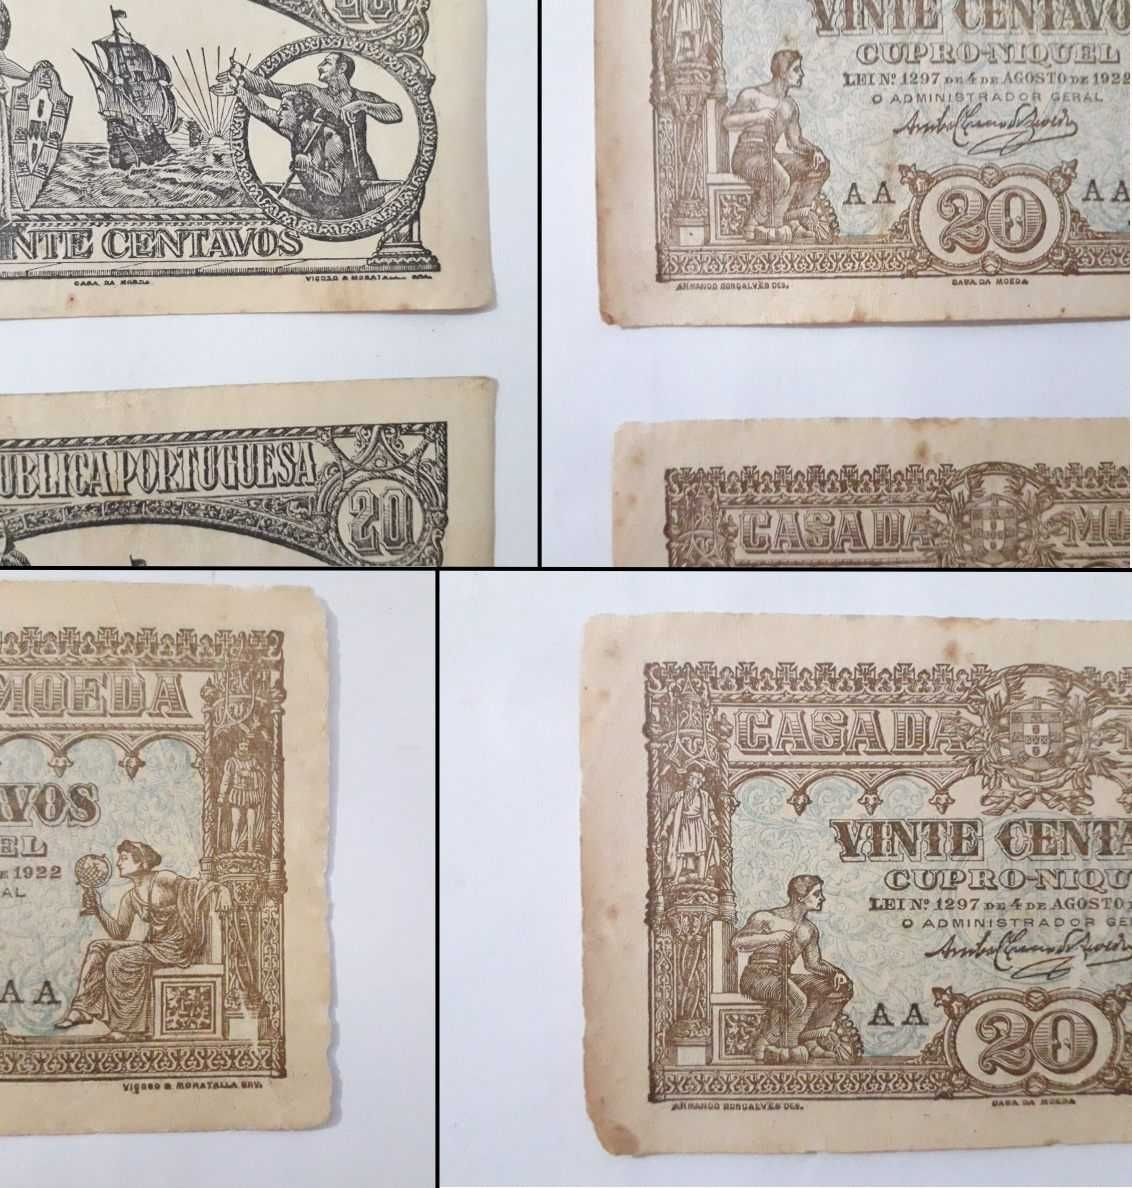 Notas-cédula de 20 centavos de 1922 Rep. Portuguesa (Casa da Moeda)